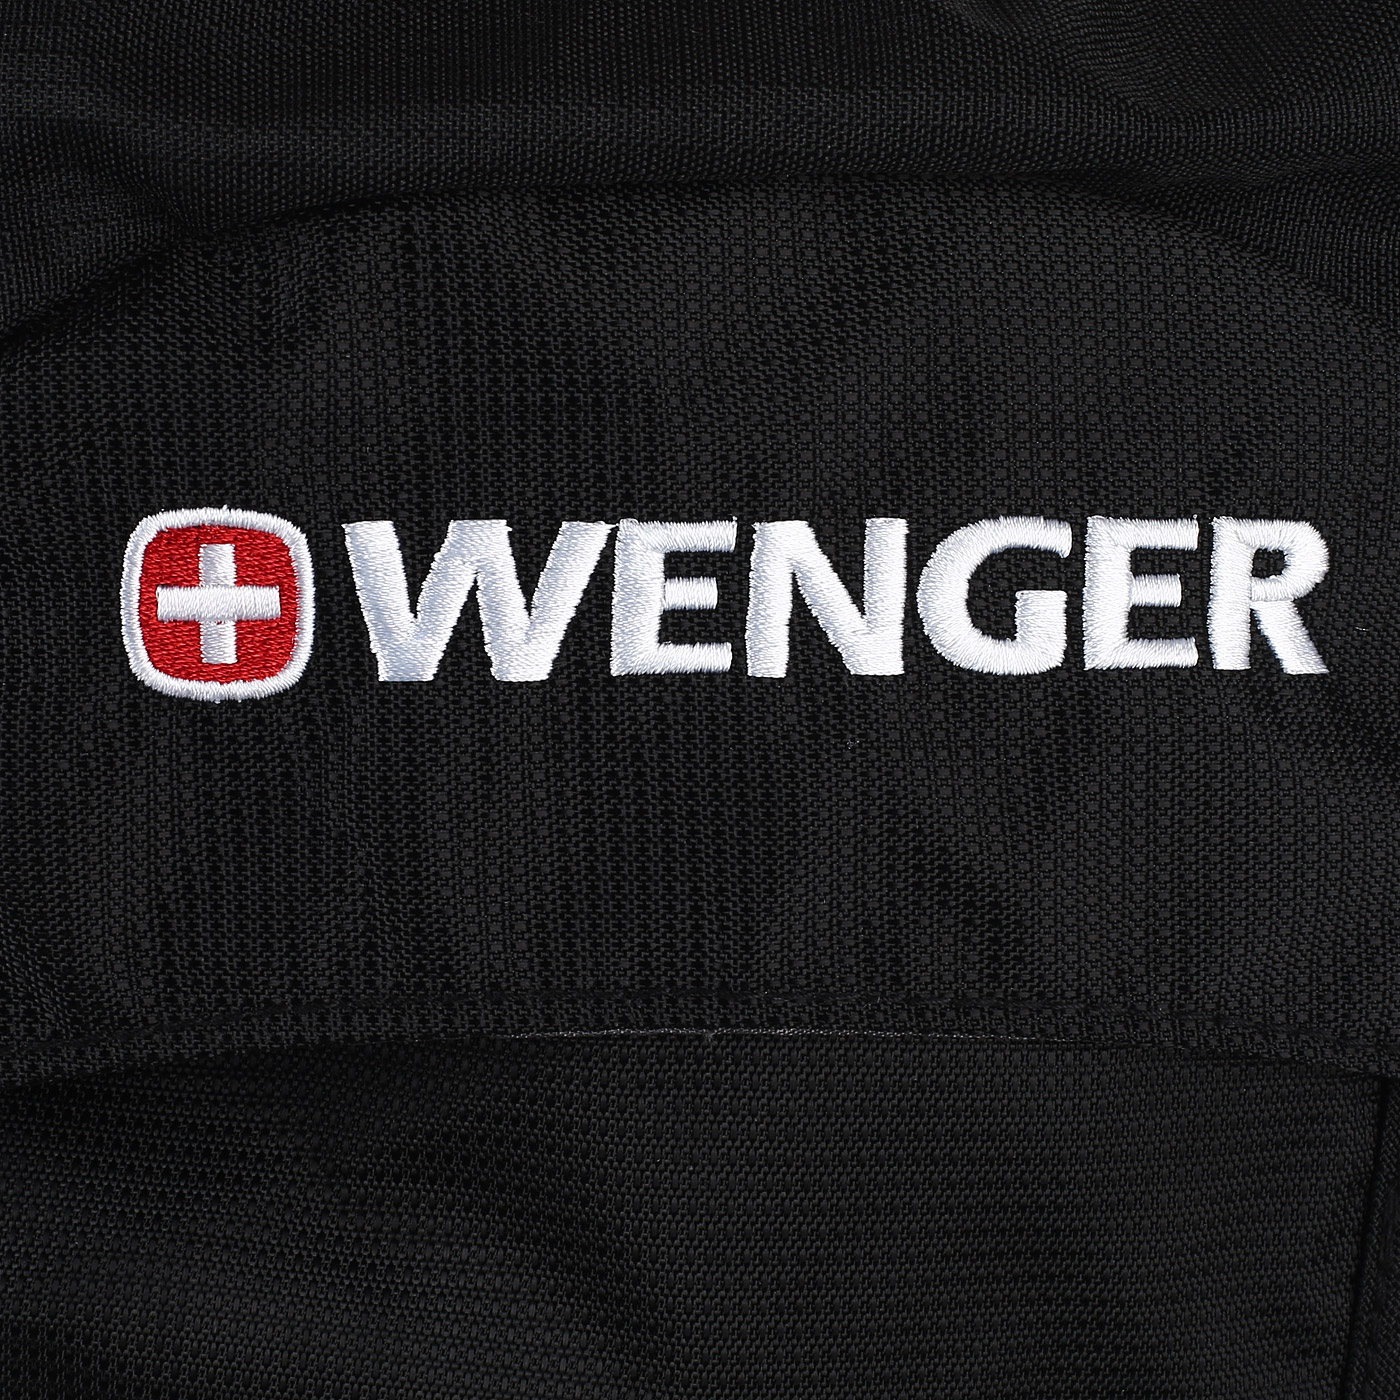 Рюкзак для активного отдыха Wenger 